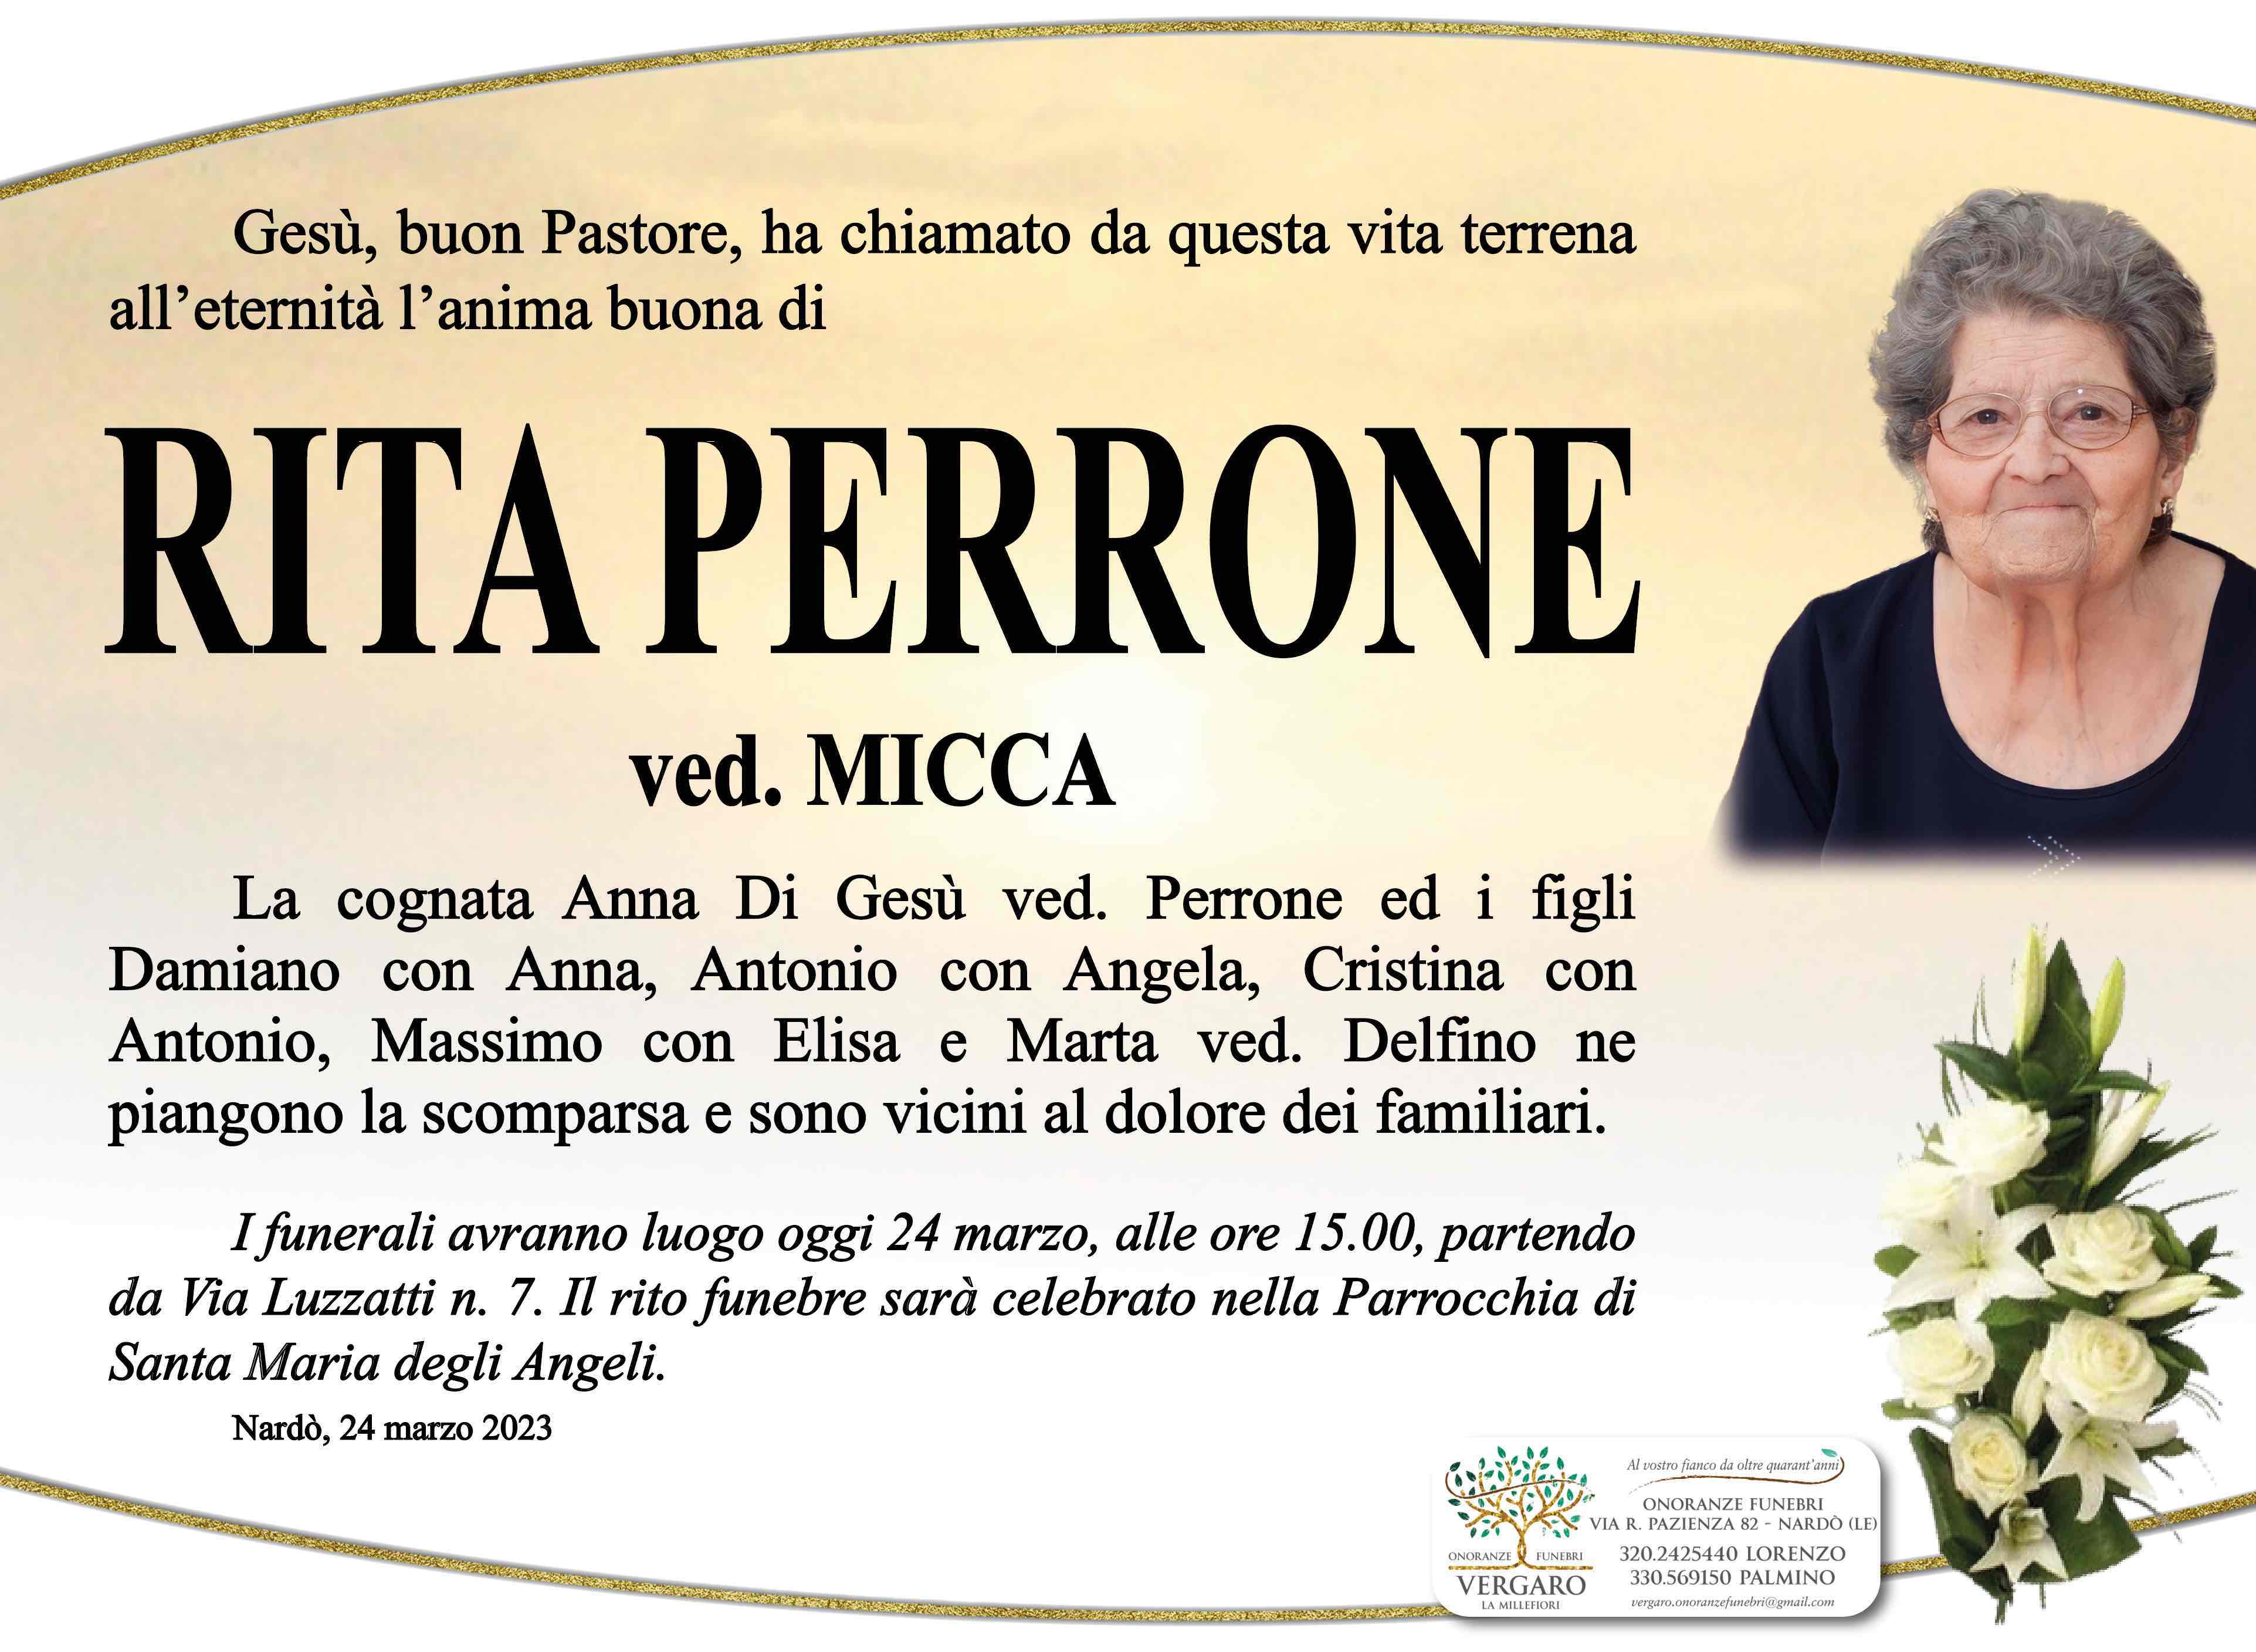 Rita Perrone